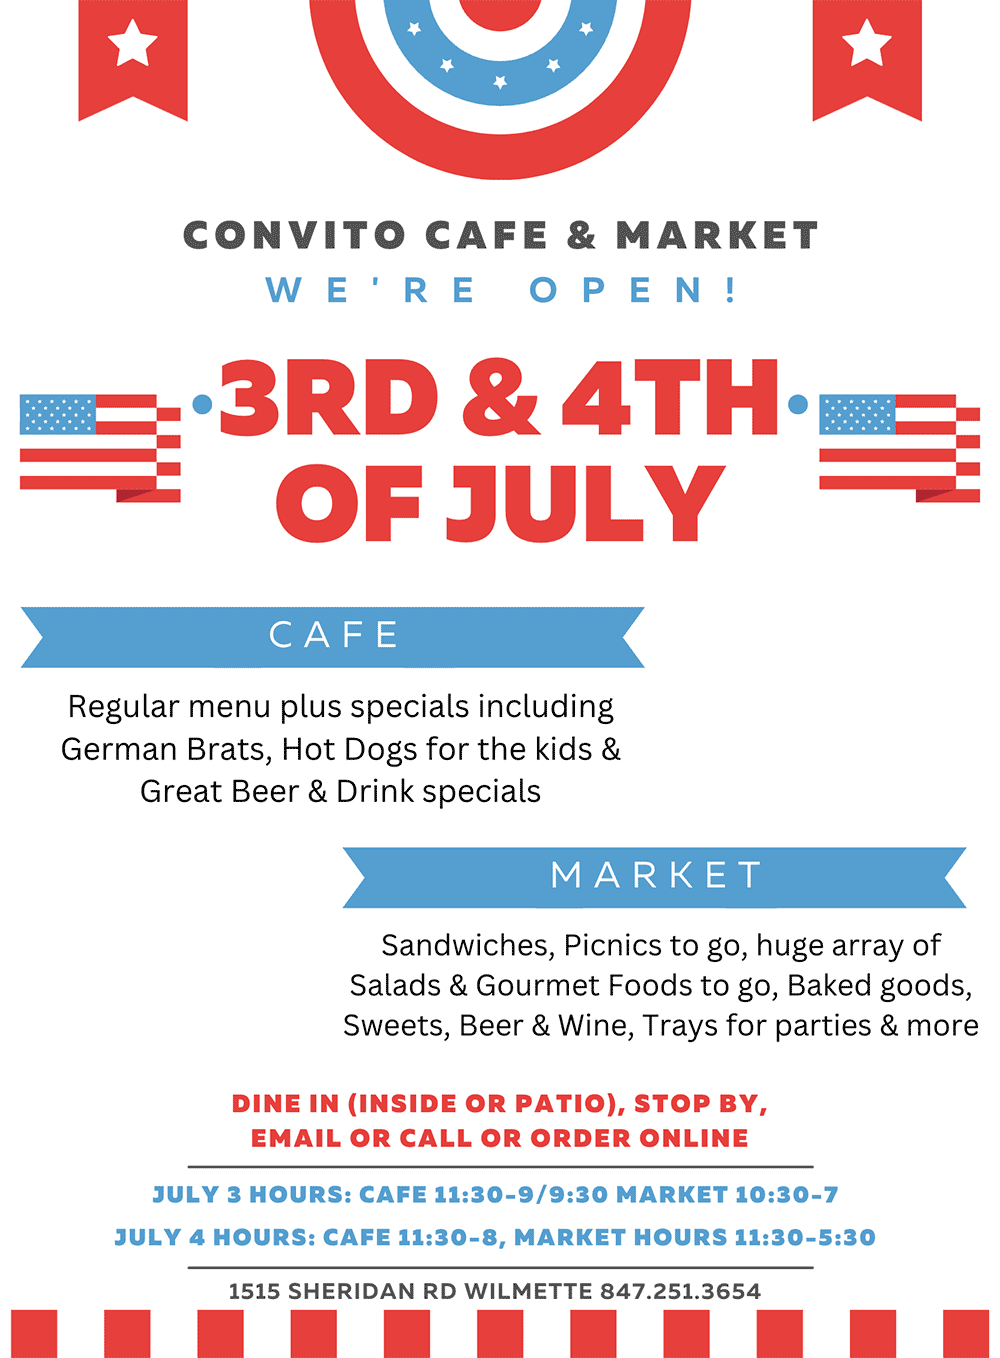 Convito open on July 4th!